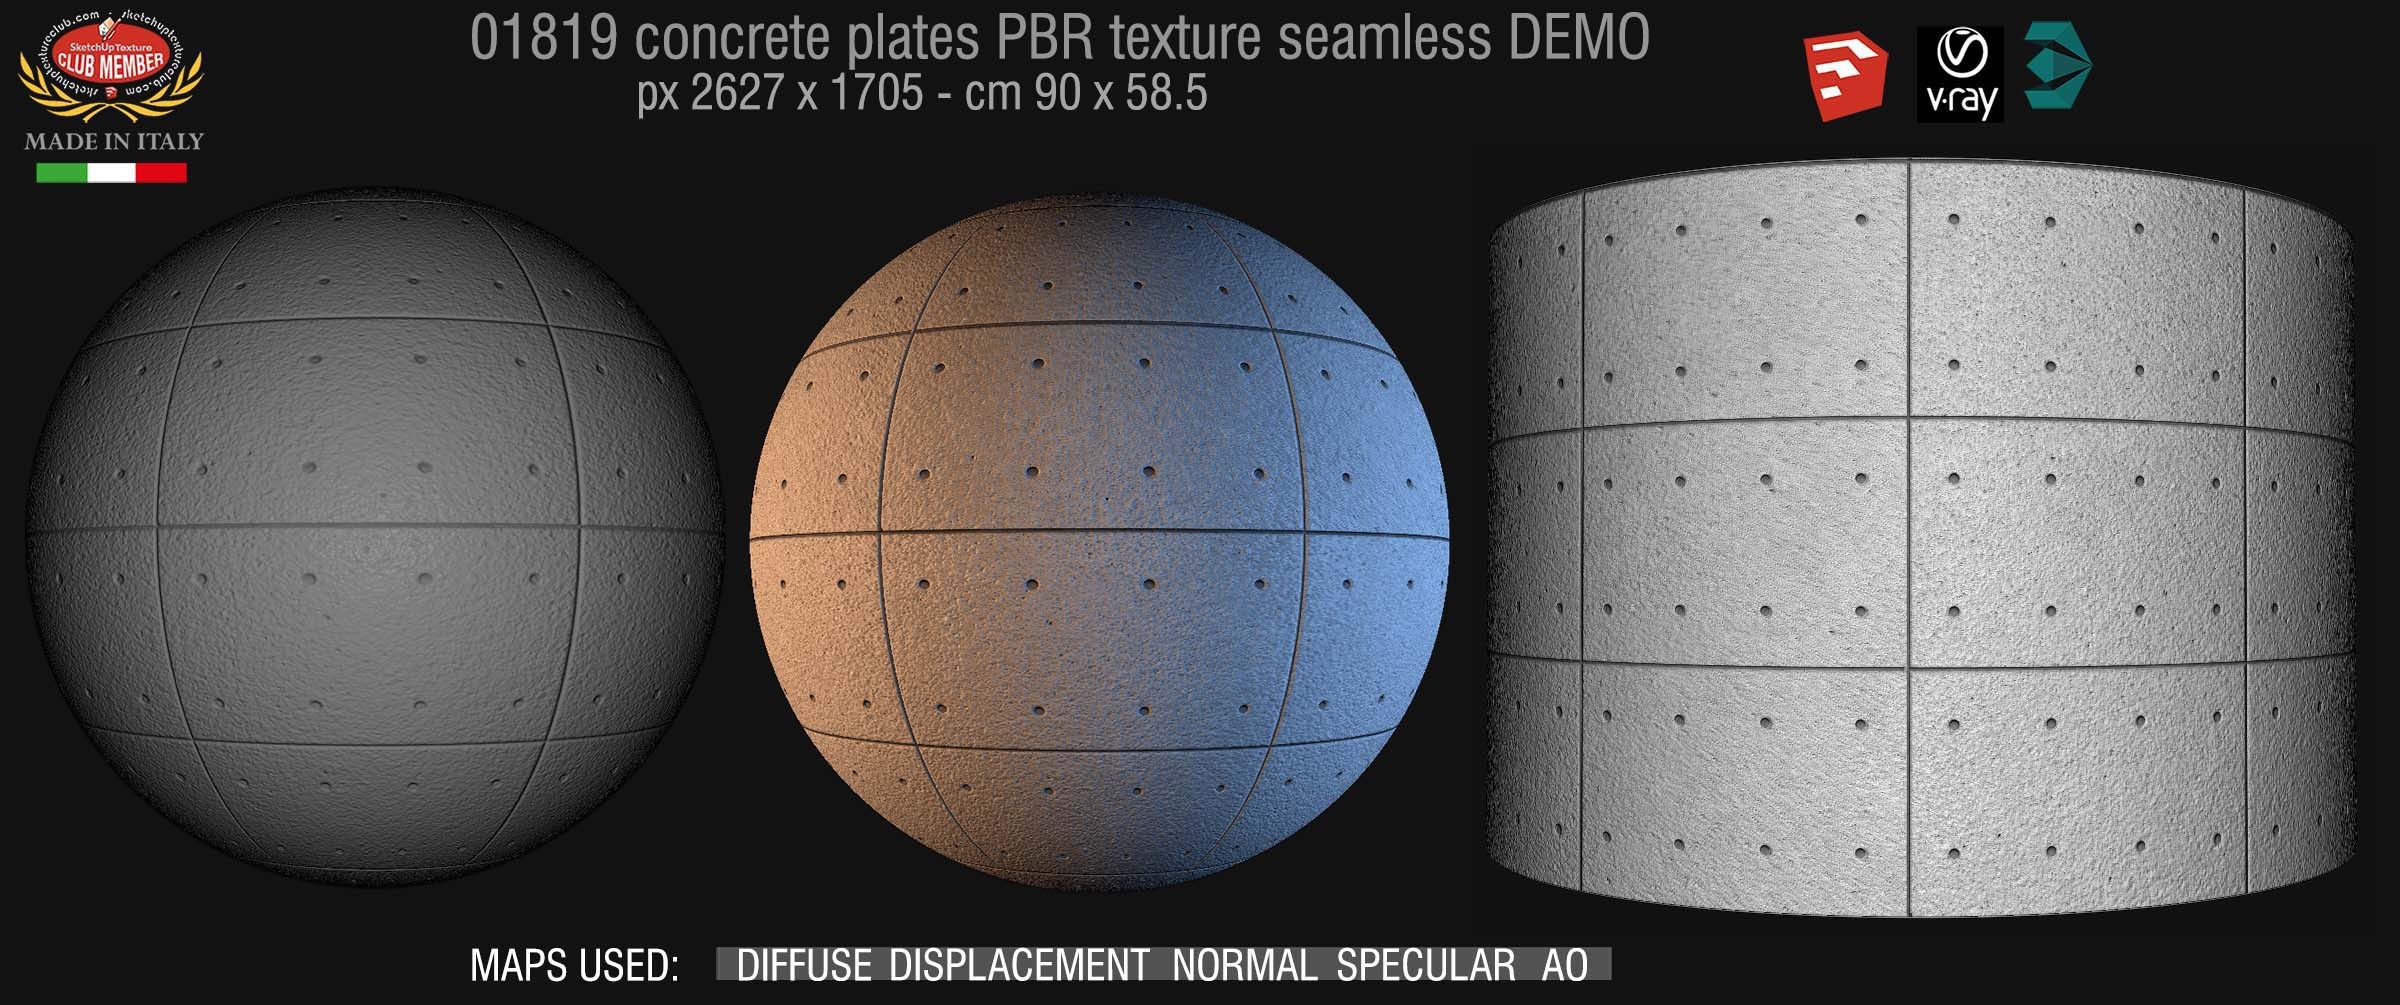 01819 Tadao Ando concrete plates PBR texture seamless DEMO